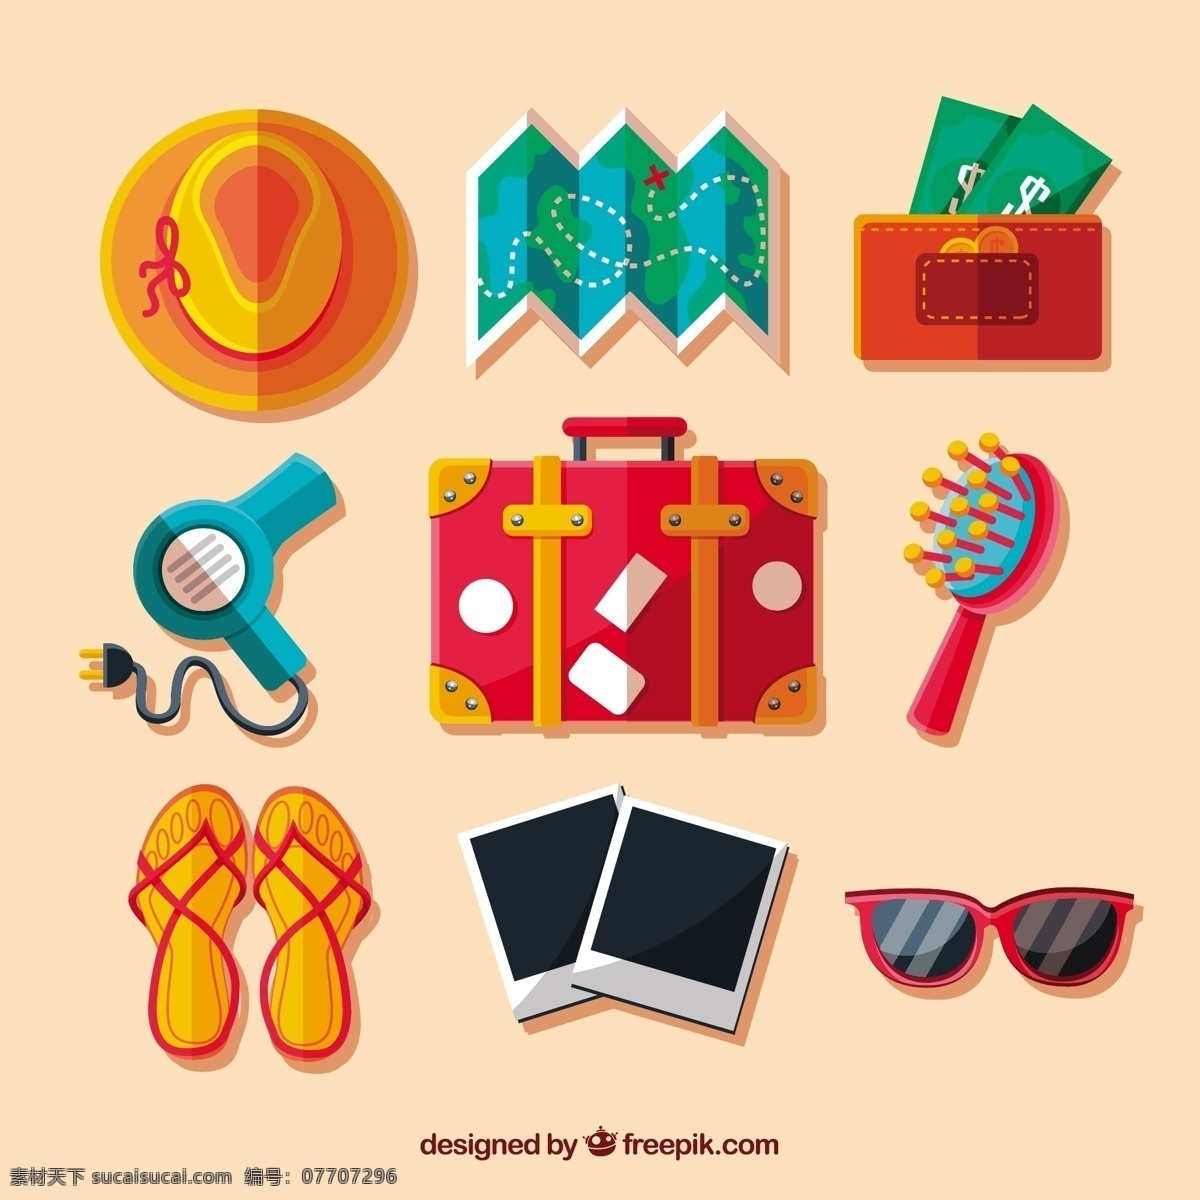 平面设计 手提 箱包 旅行配件 旅游 夏季 地图 世界 世界地图 平面 帽子 太阳镜 度假 旅行 手提箱 钱包 配件 行李 背包